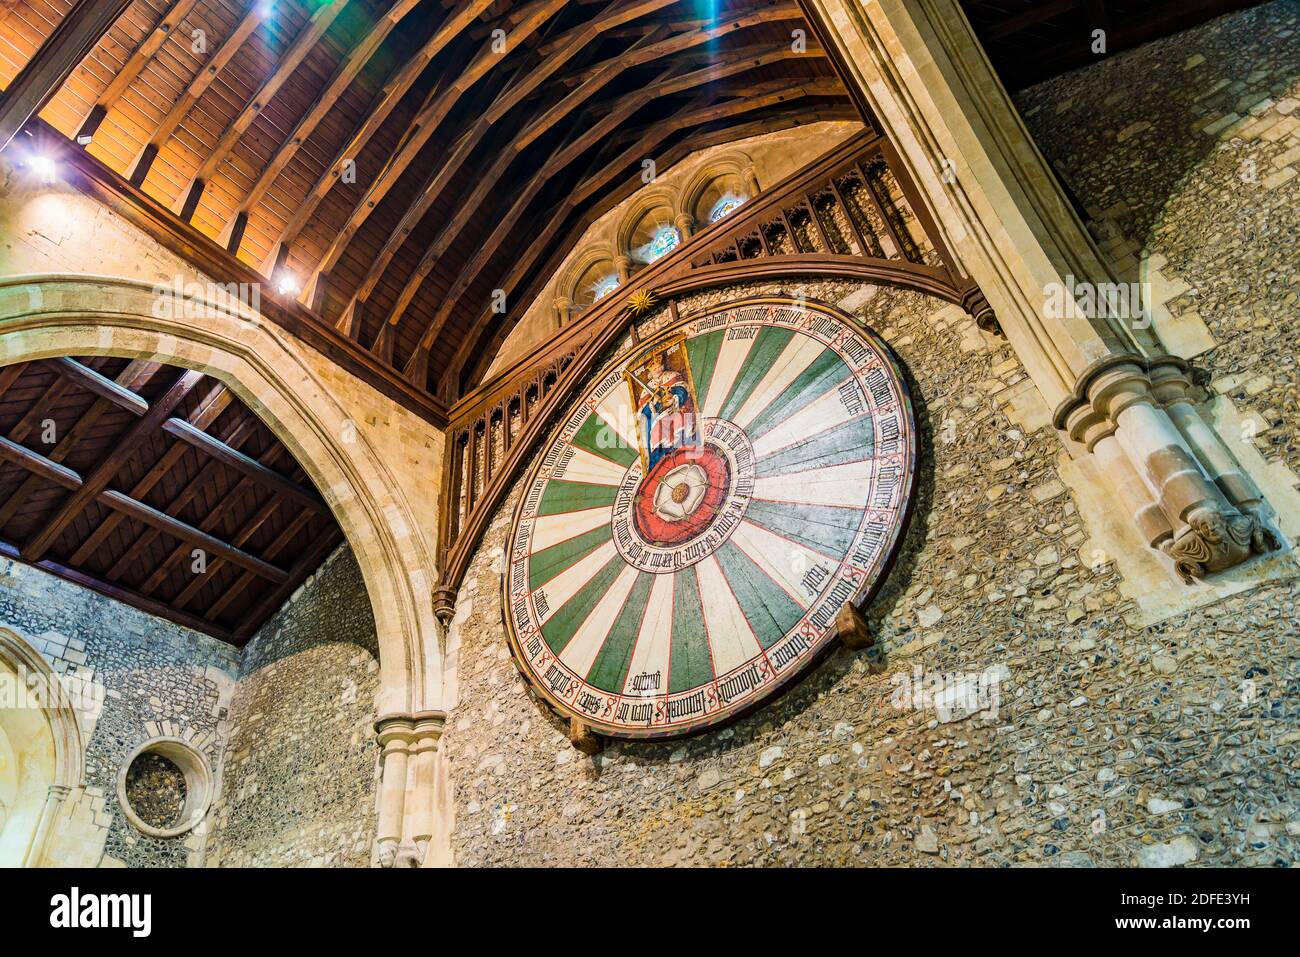 Winchester Round Table nella Great Hall, una replica medievale della leggendaria tavola di Re Artù. Winchester, Hampshire, Inghilterra, Regno Unito, Europa Foto Stock